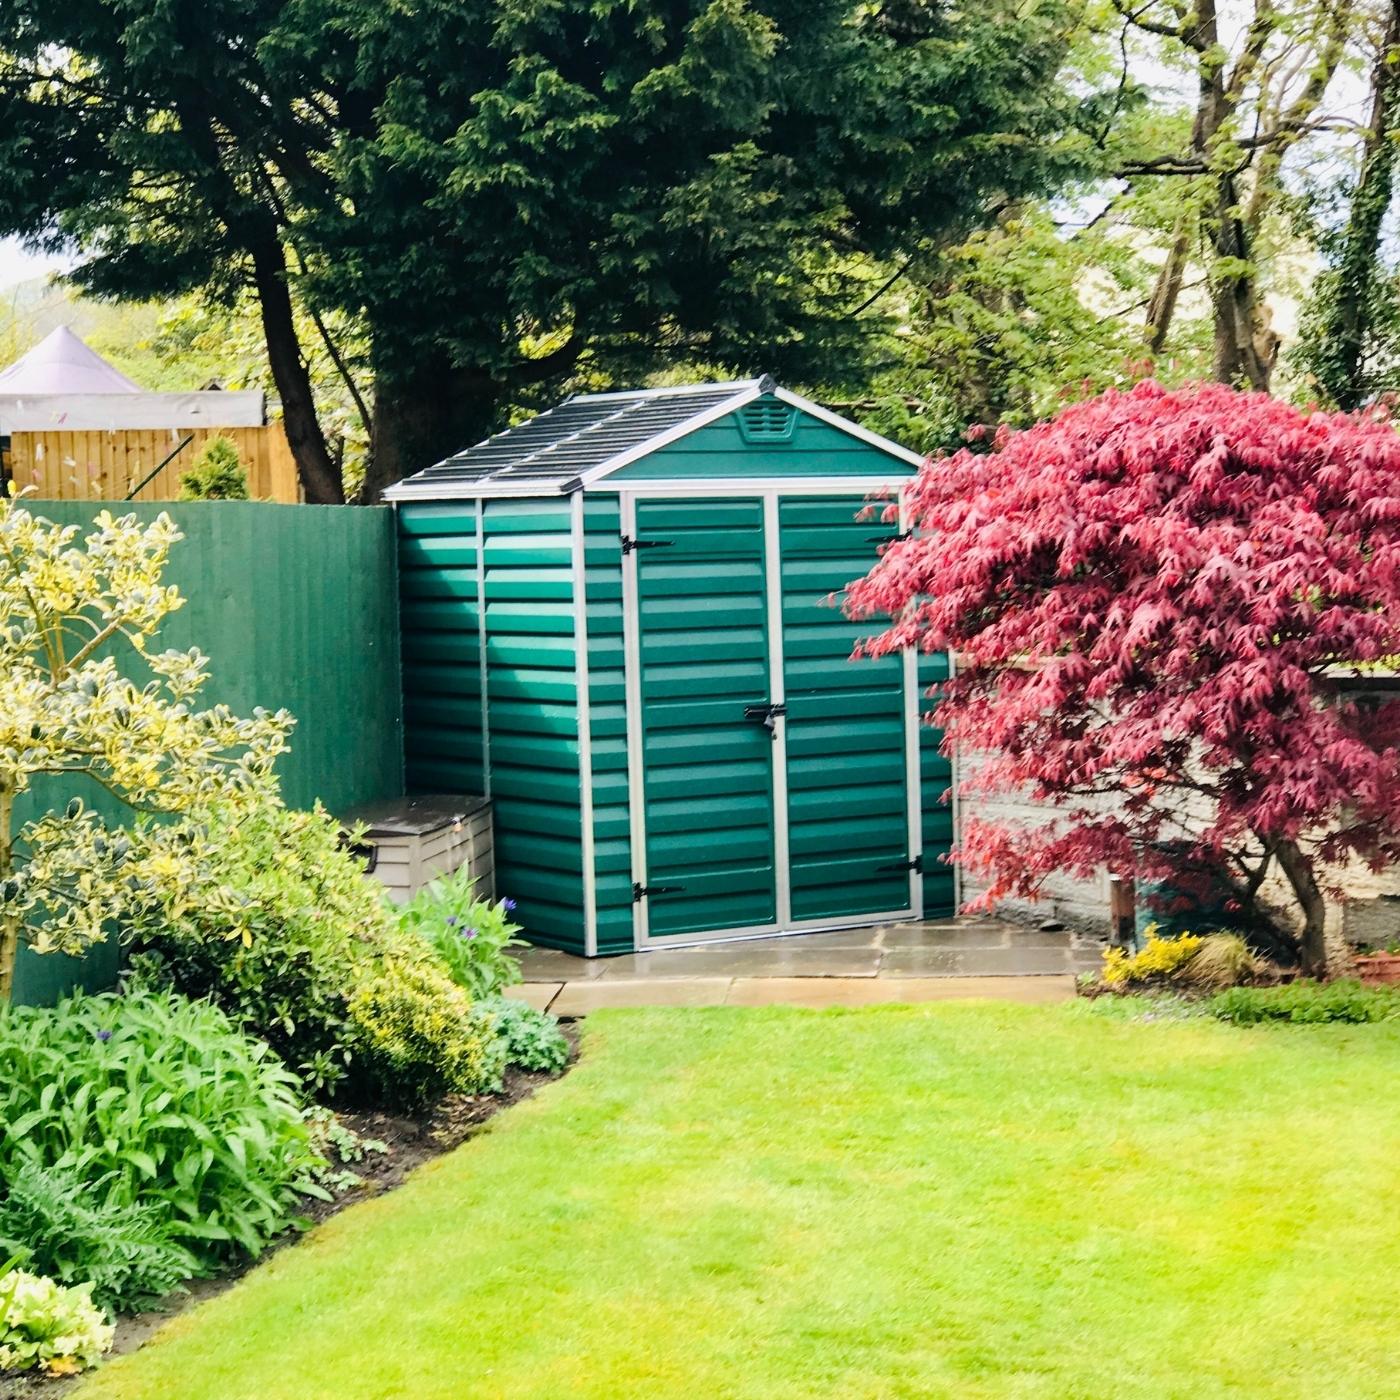 green-garden-shed-in-garden.jpg